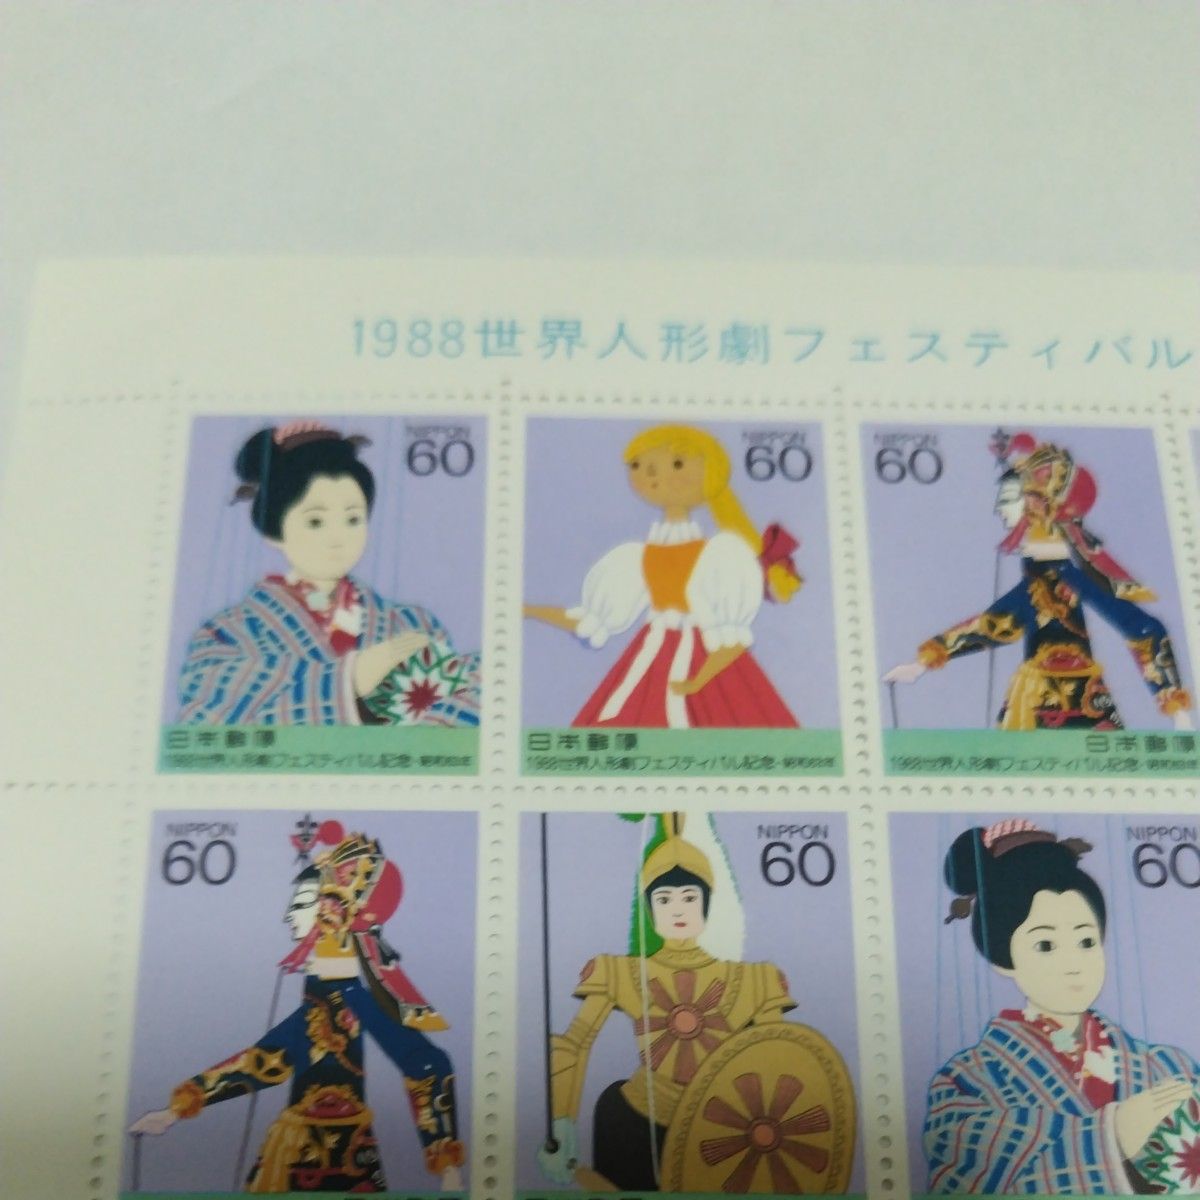 1988  世界人形劇フェスティバル記念　額面1200円